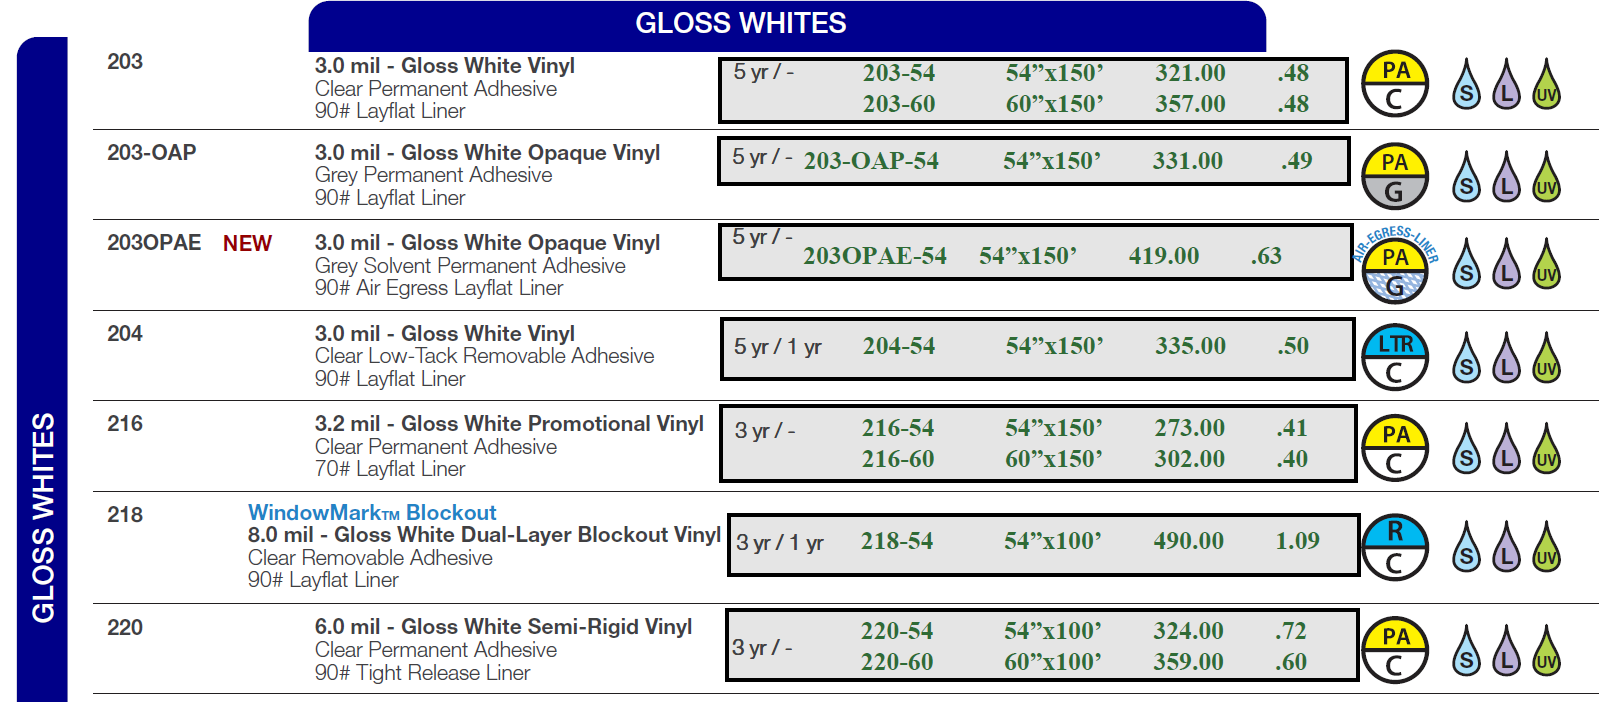 concept gloss white 1 2023 - Digital Print Media - Gloss Whites